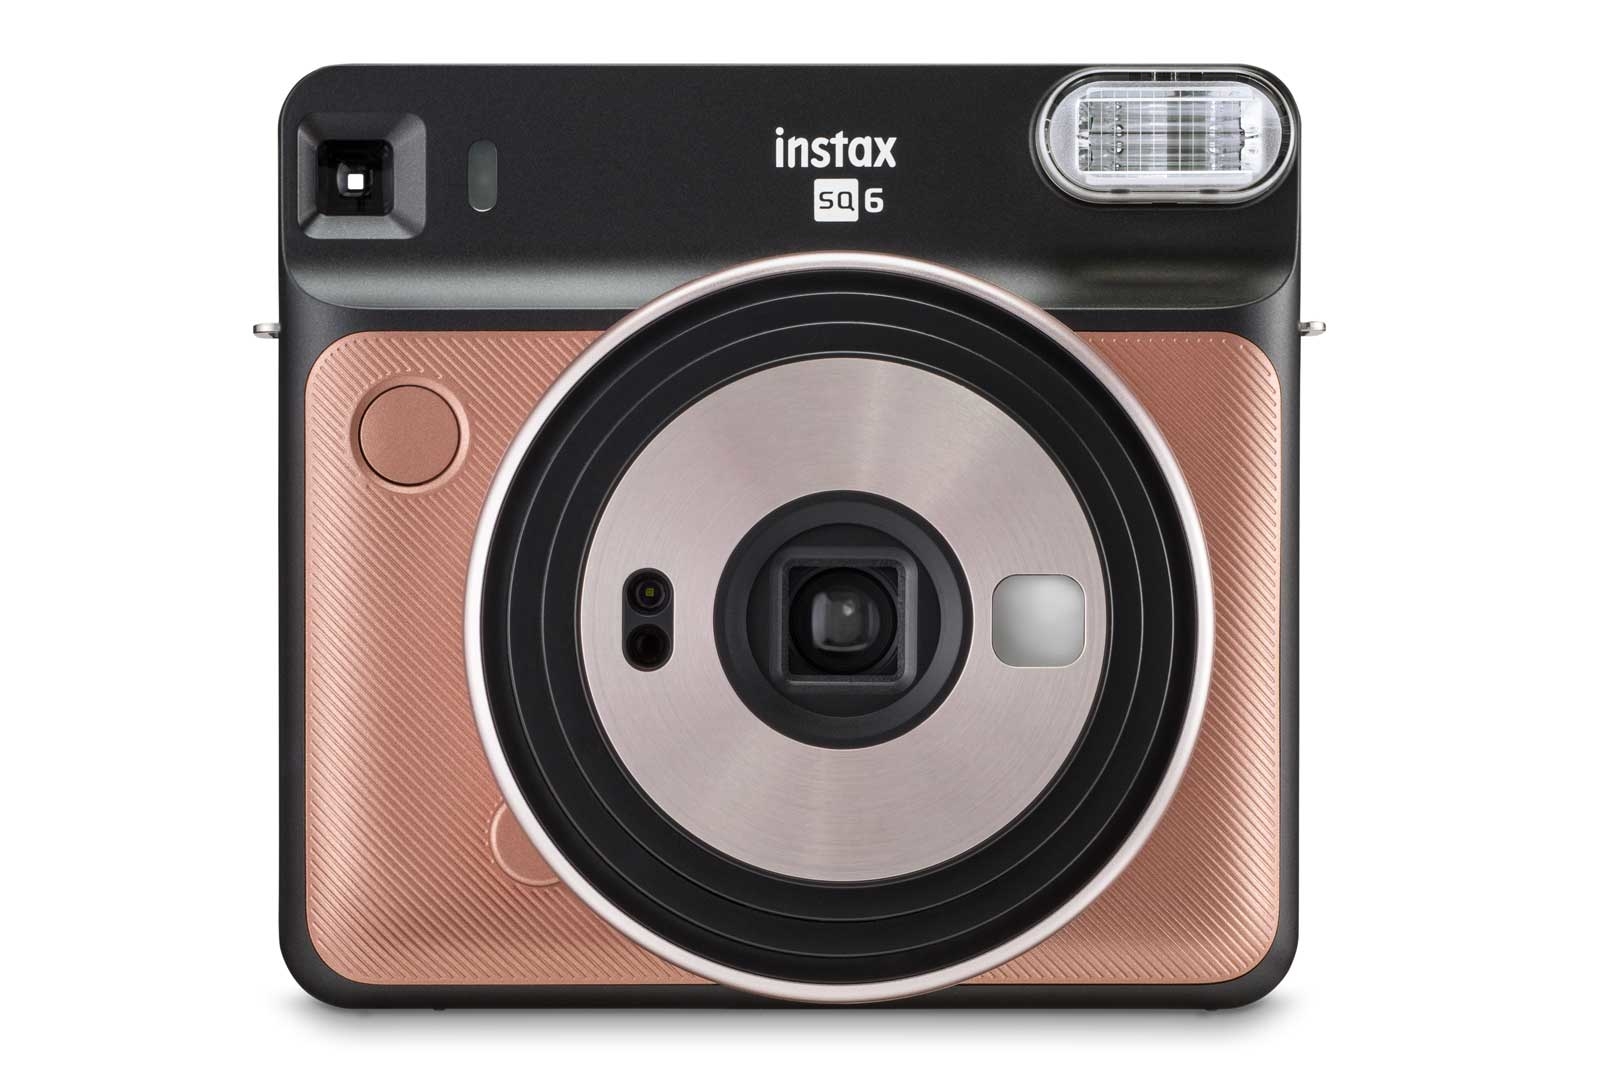 Fujifilm giới thiệu máy ảnh Instax Square SQ6: Thiết kế hình vuông đẹp mắt và có thể chụp lấy ngay